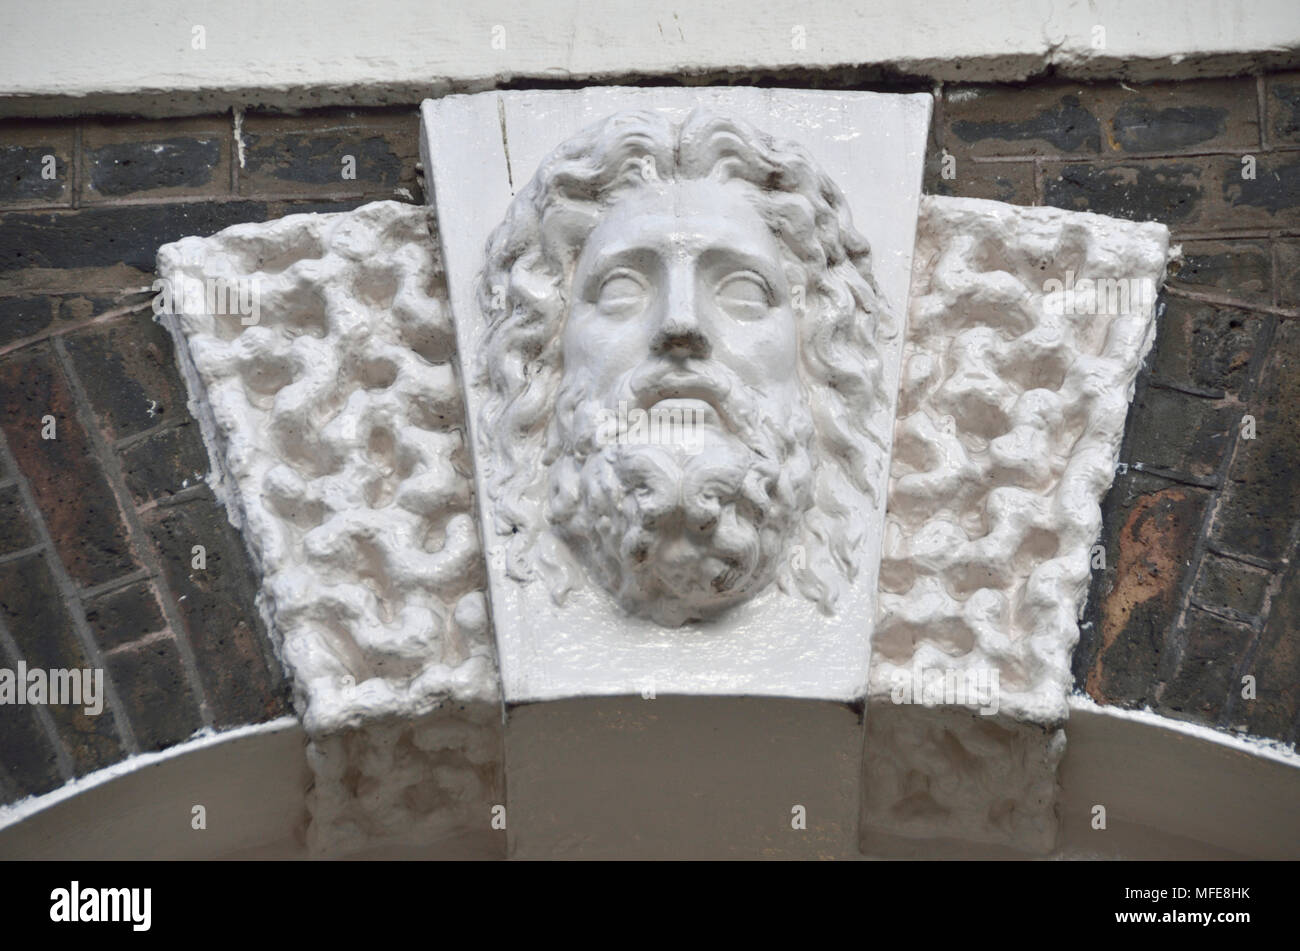 La sculpture en pierre orné d'une tête humaine au-dessus de la porte d'arche de Bedford Square, Bloomsbury, London, UK. Banque D'Images